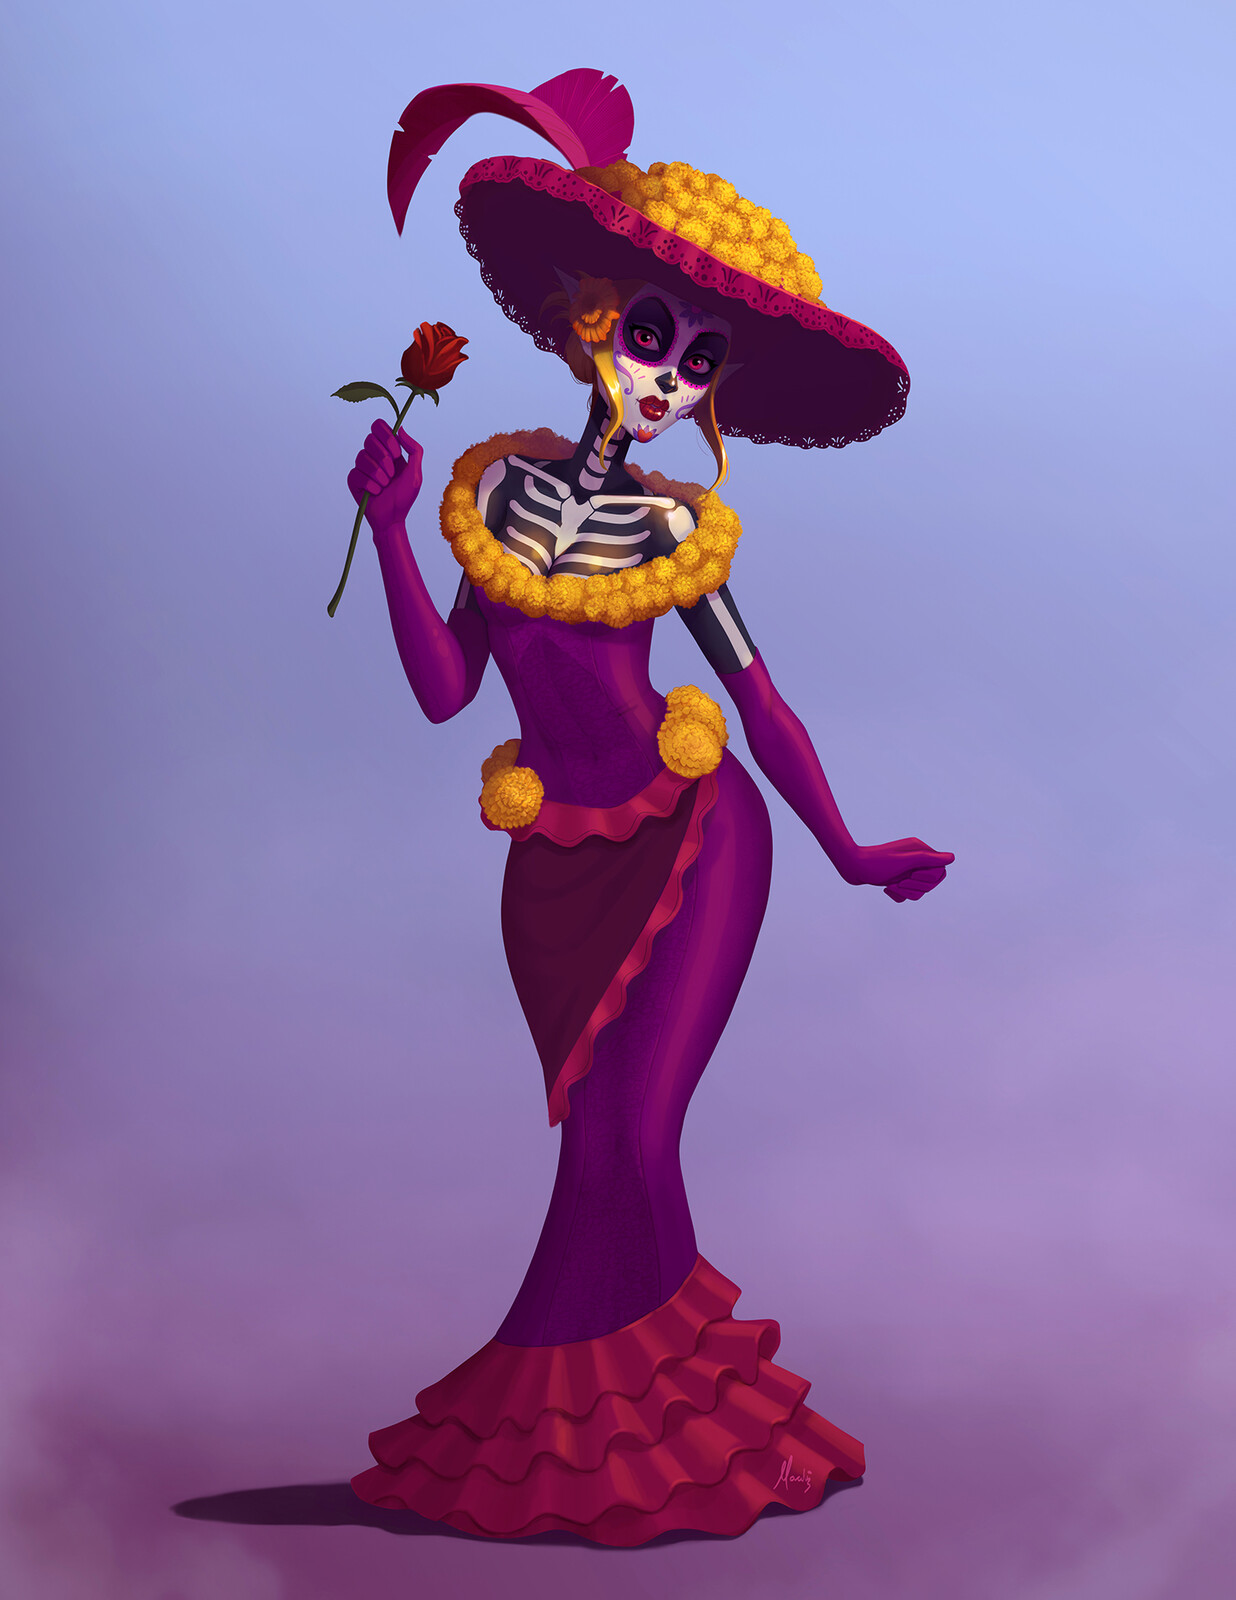 Mira's Halloween costume inspired in Dia de Muertos